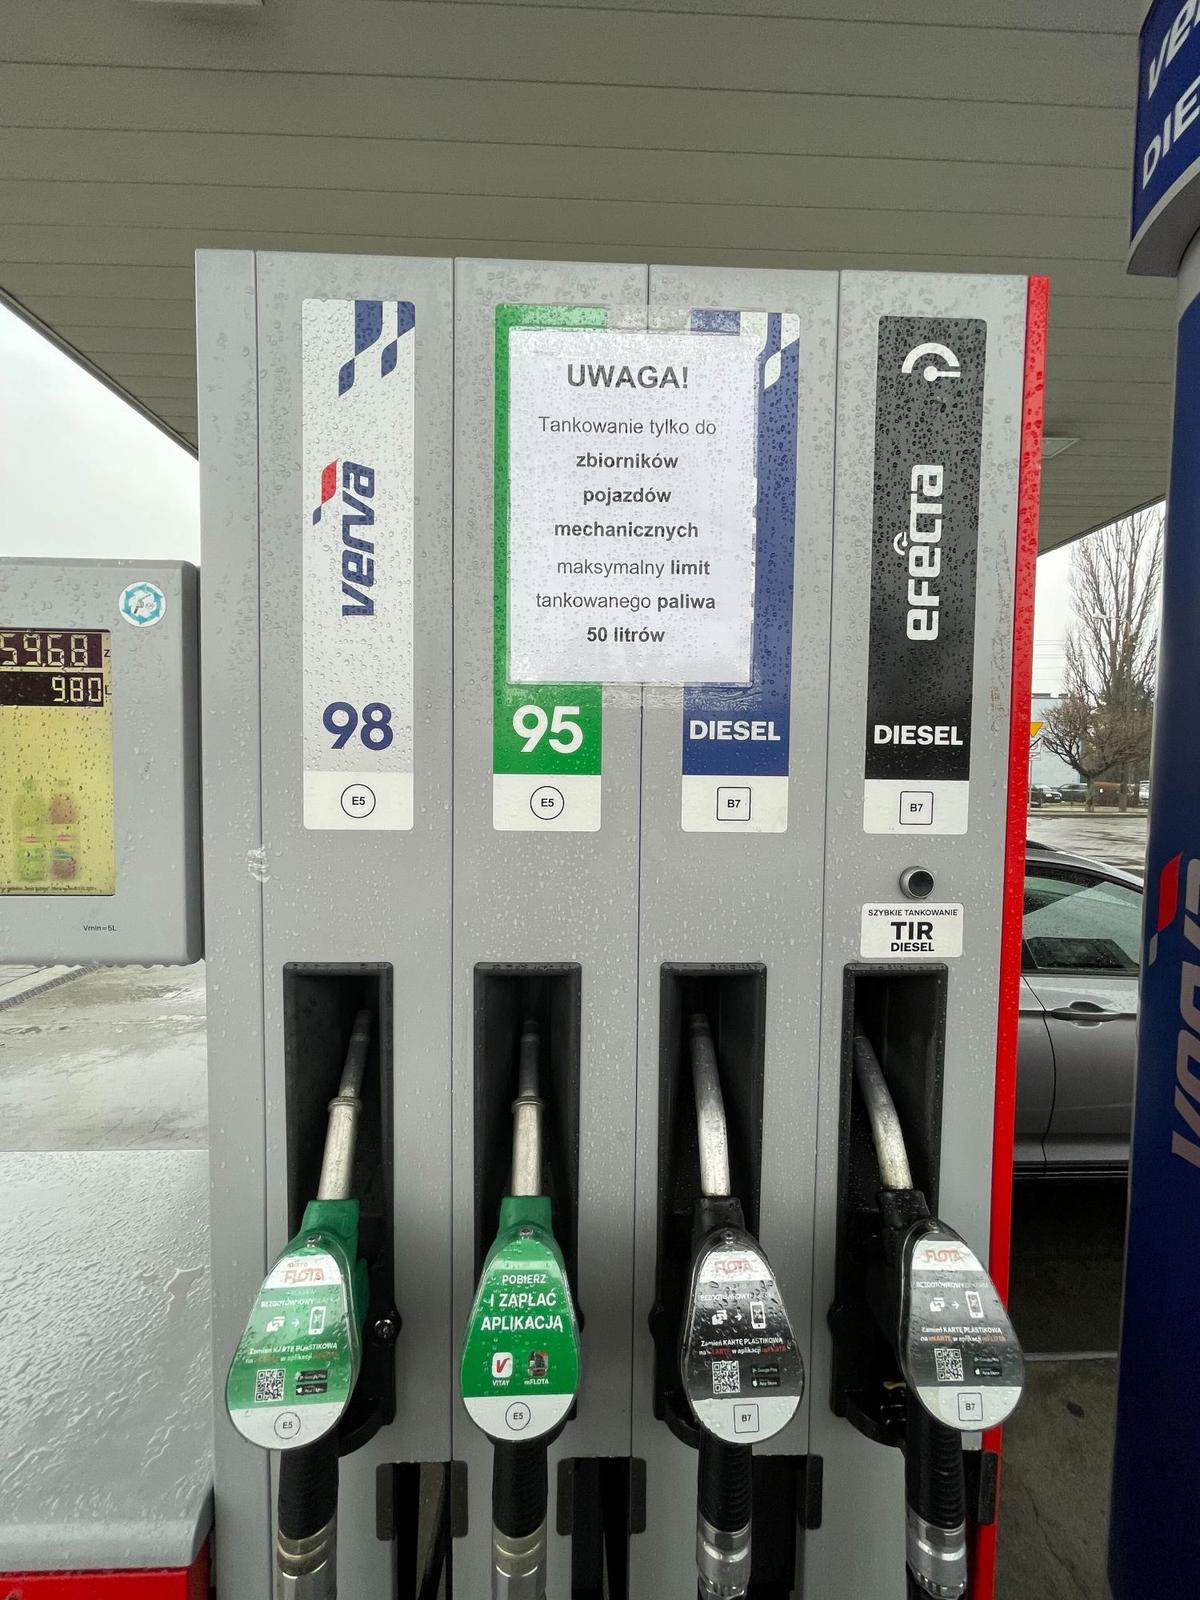 Limity tankowania na stacji paliw Orlen - źródło: własne class="wp-image-2064641" 